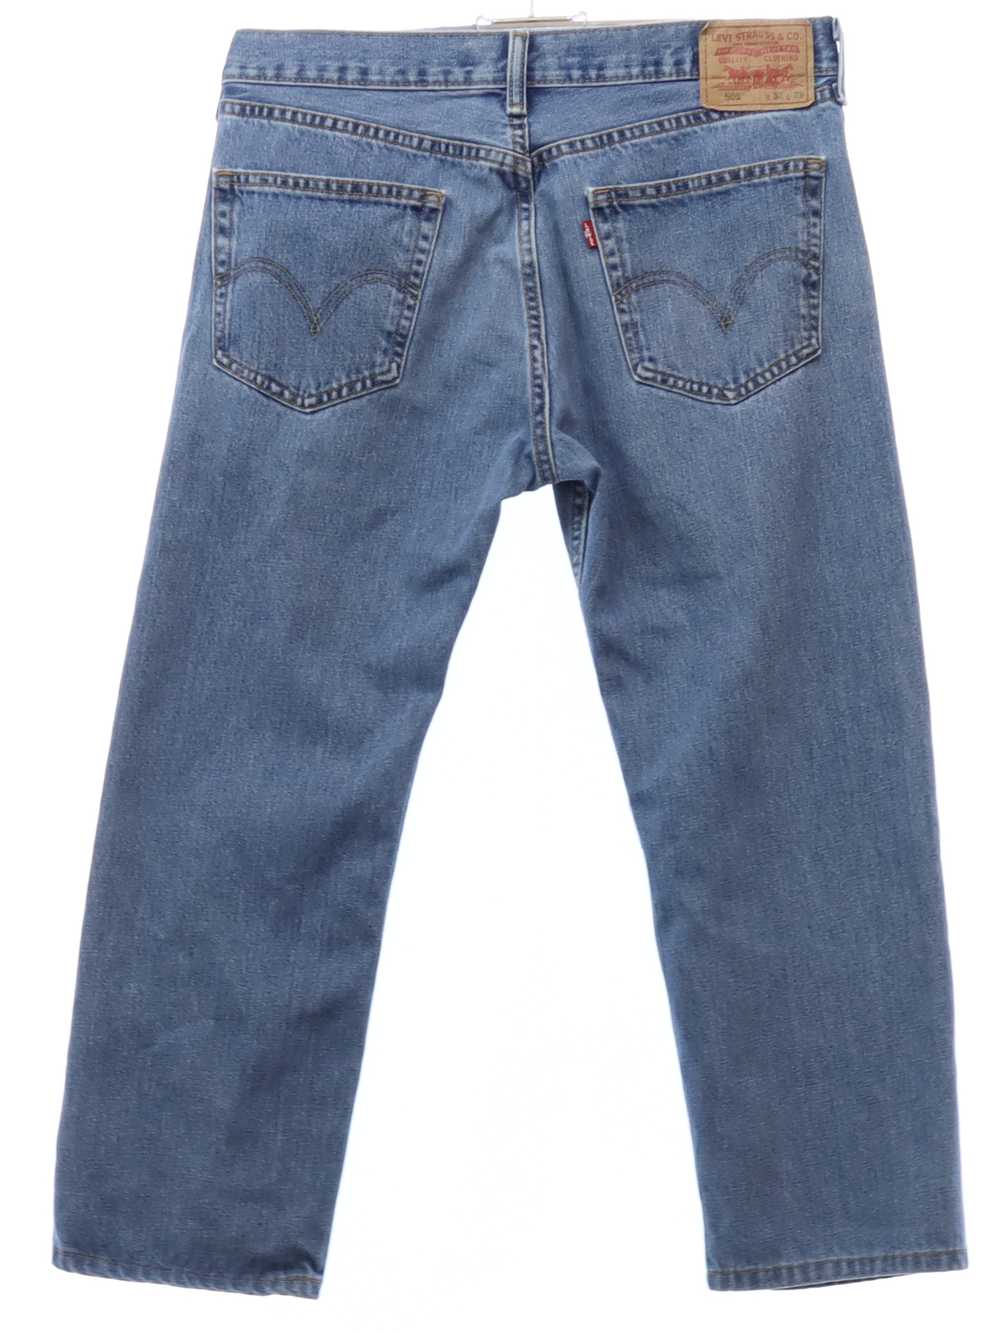 1990's Levis 505 Mens Levis 505s Denim Jeans Pants - image 3